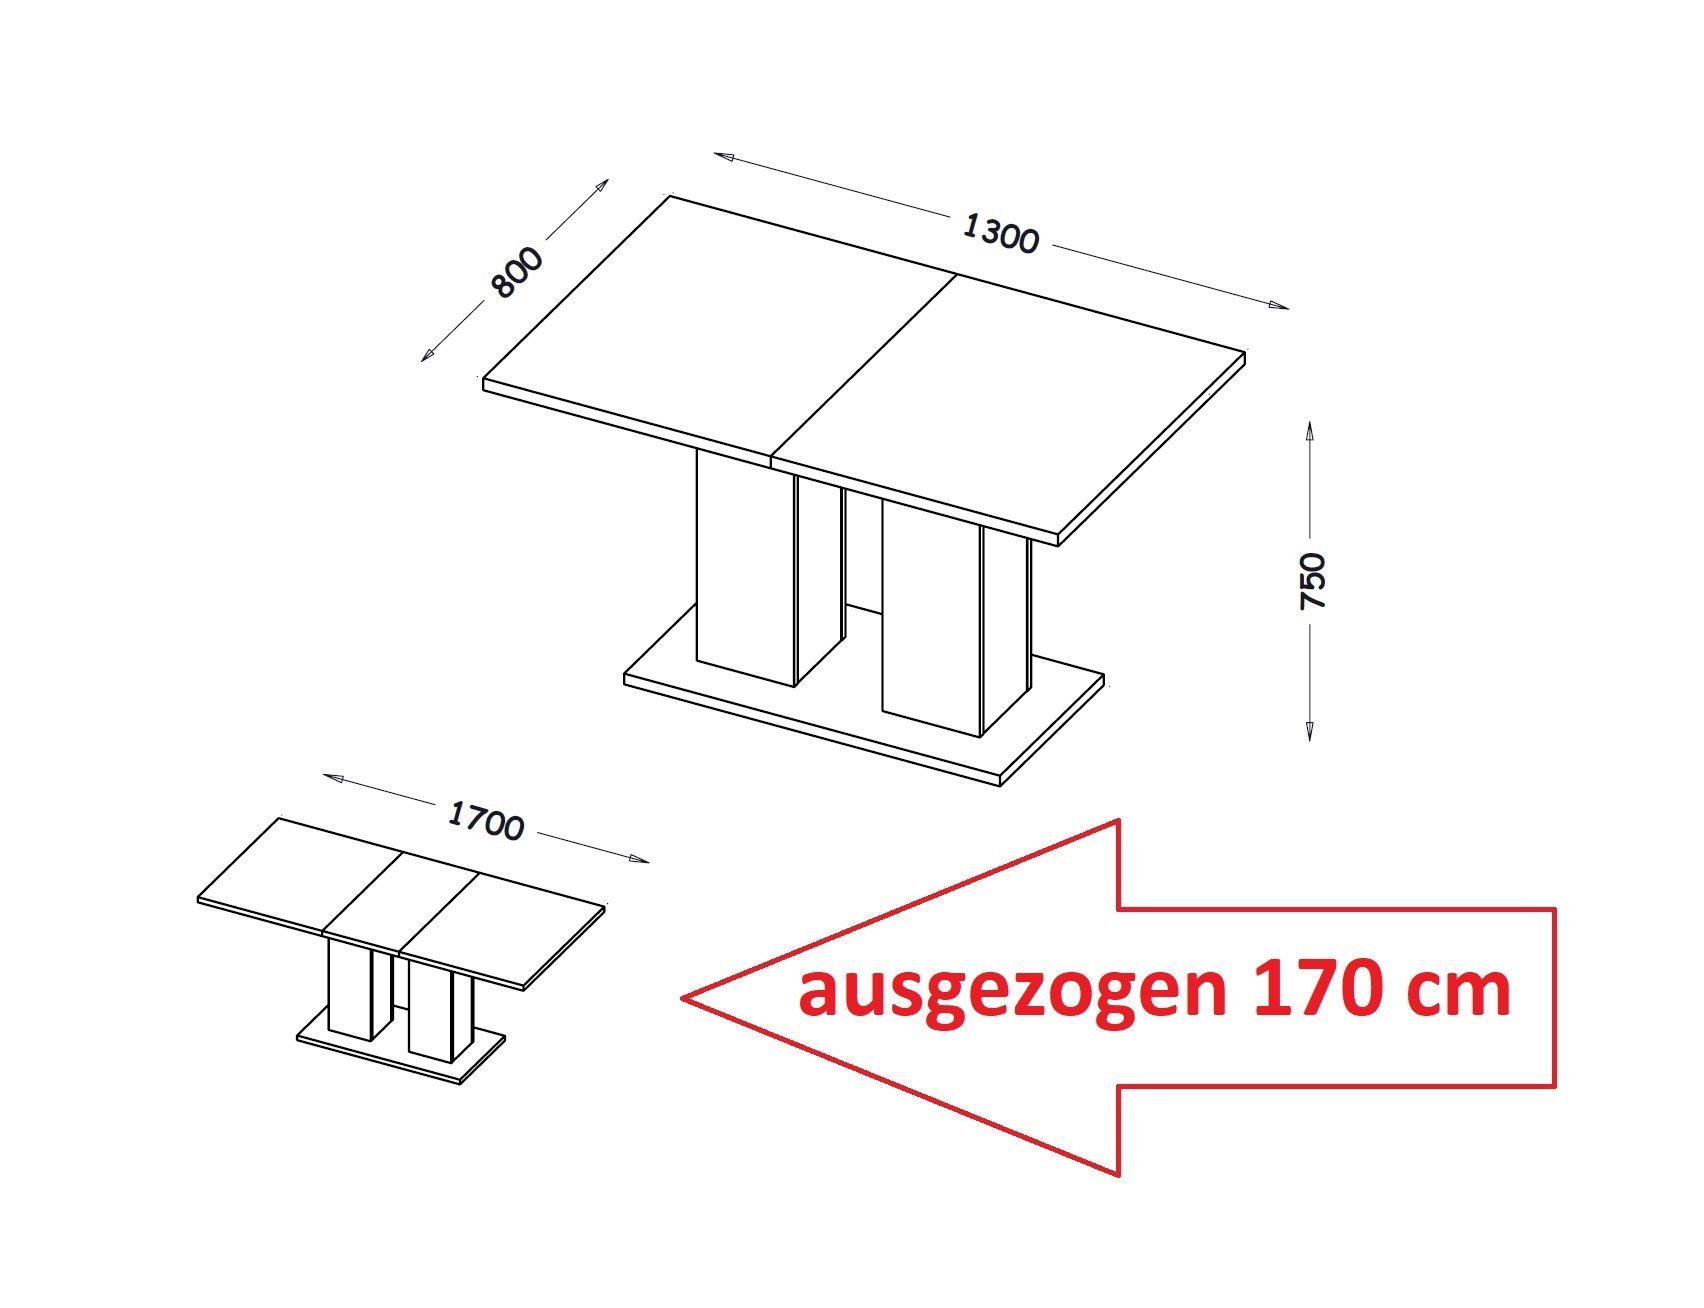 designimpex Esstisch ausziehbar Design Hochglanz bis 170 Esstisch Weiß DE-1 Tisch cm 130